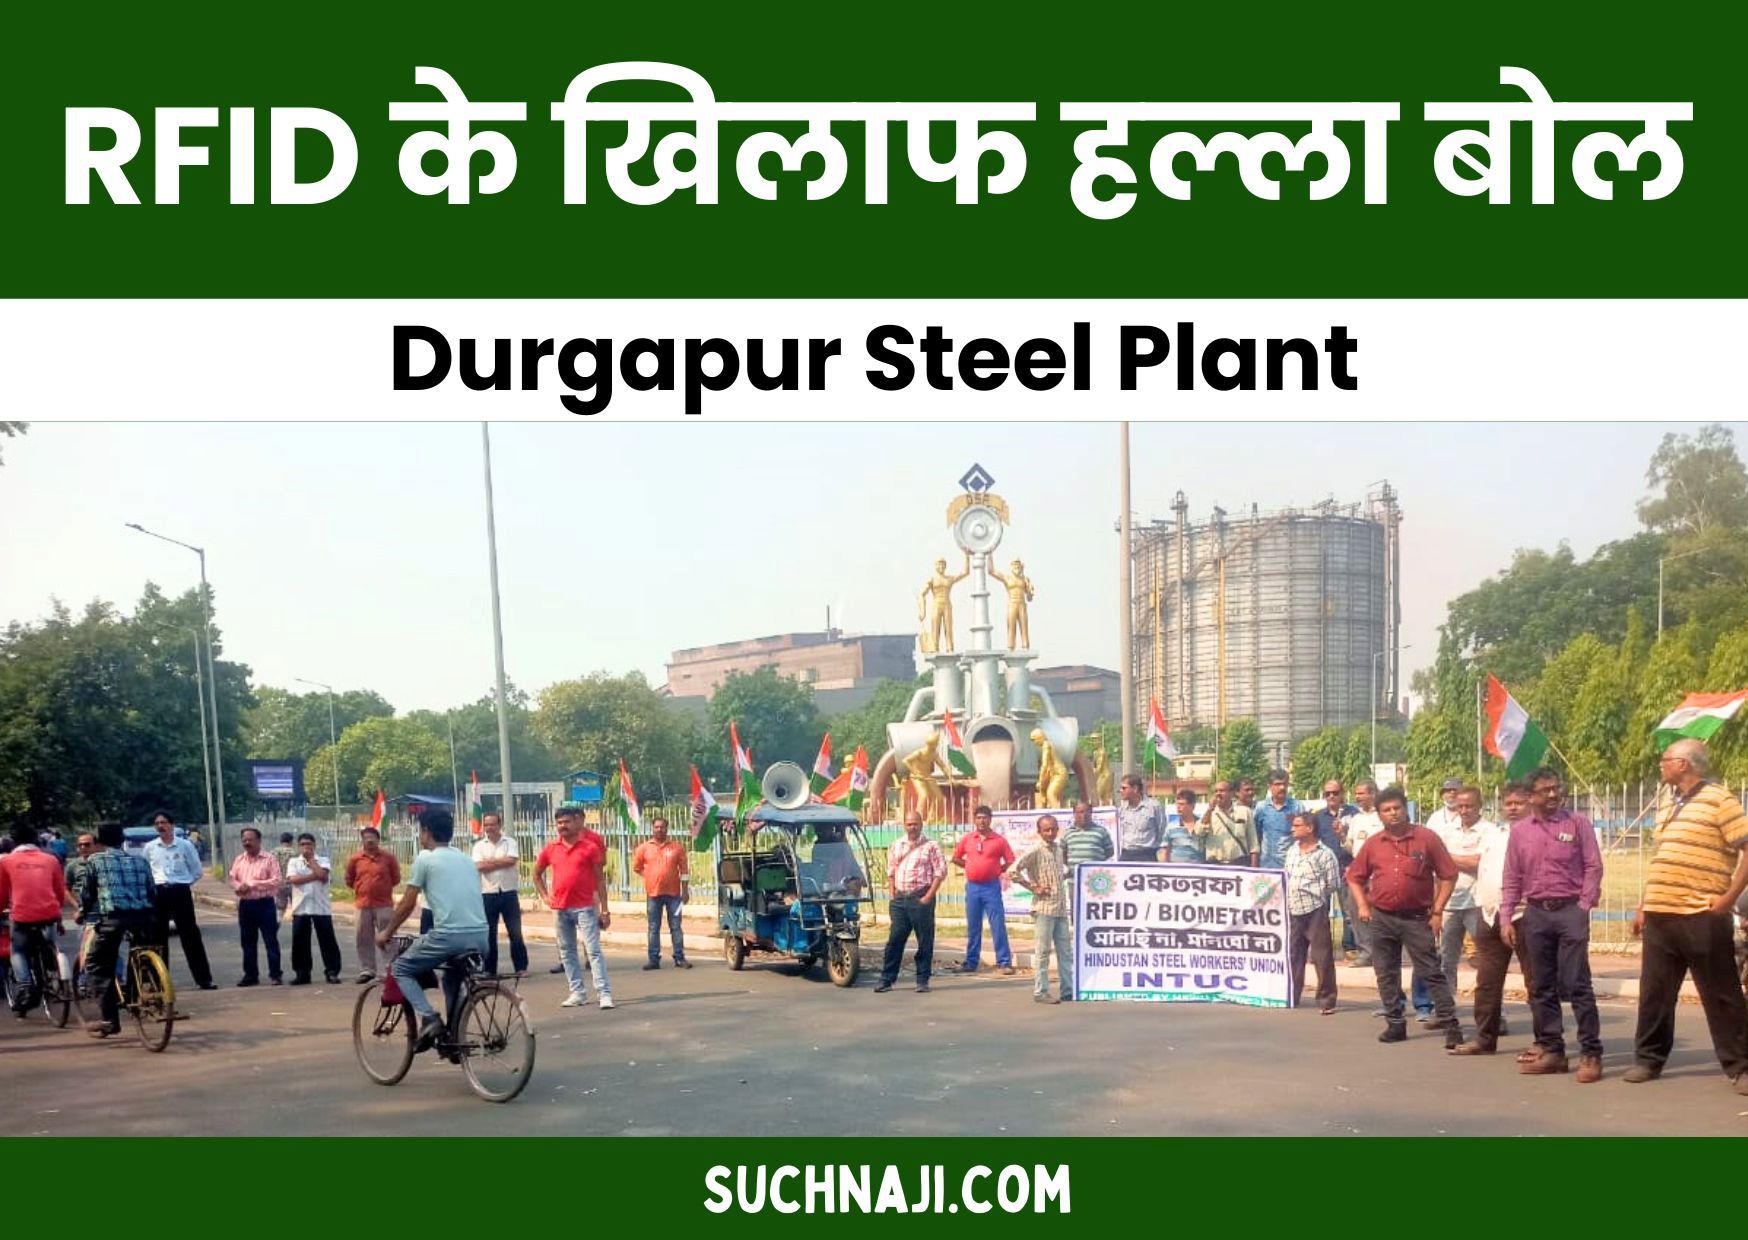 Durgapur Steel Plant: मेन गेट पर कर्मचारियों का हल्ला बोल, RFID के खिलाफ संयुक्त यूनियन का बना रोडमैप